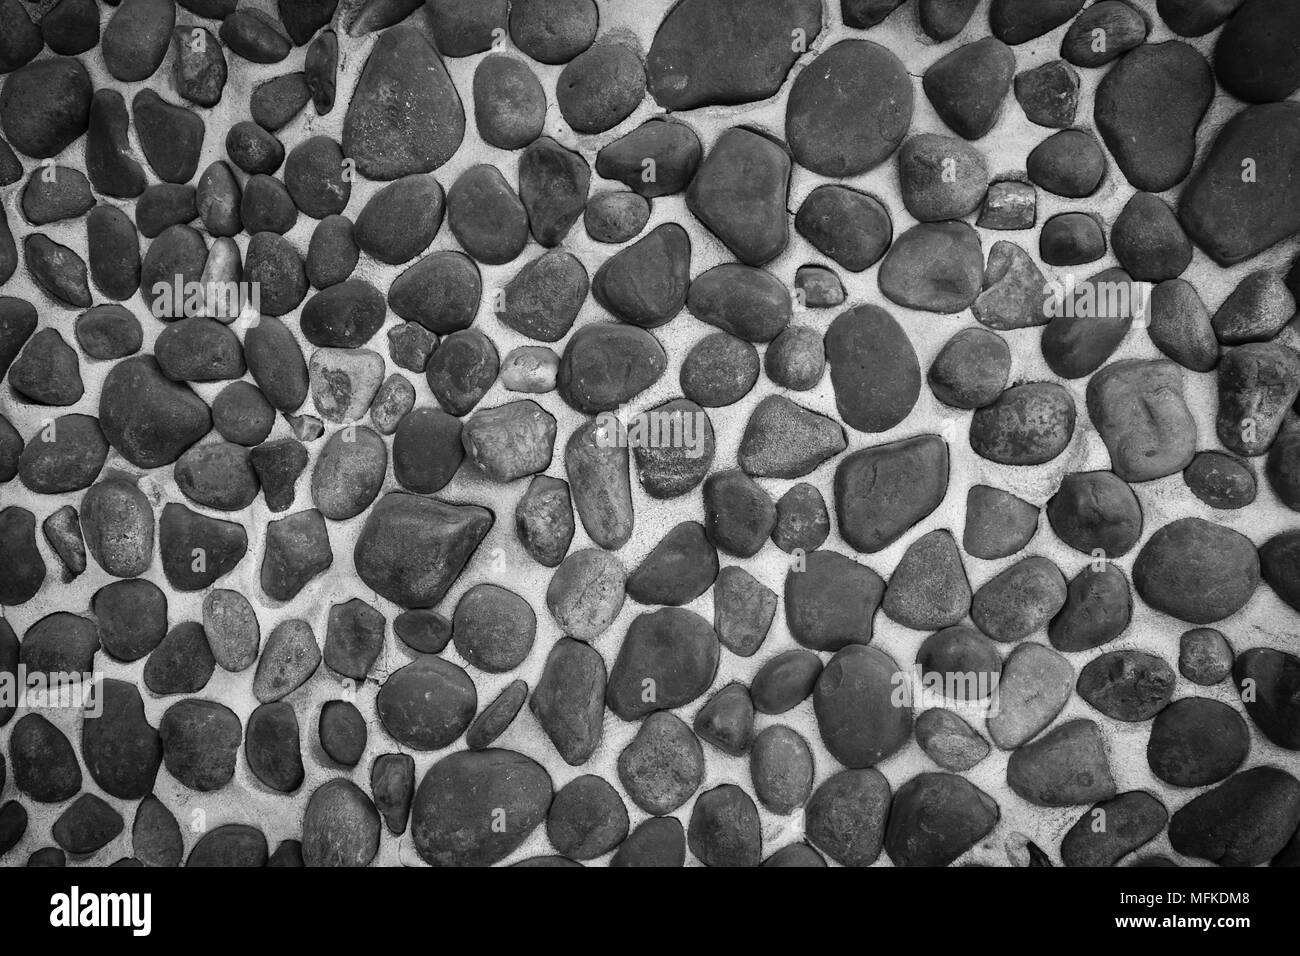 Un gros plan noir et blanc d'un mur en pierres lisses incorporées dans le mortier de ciment Banque D'Images